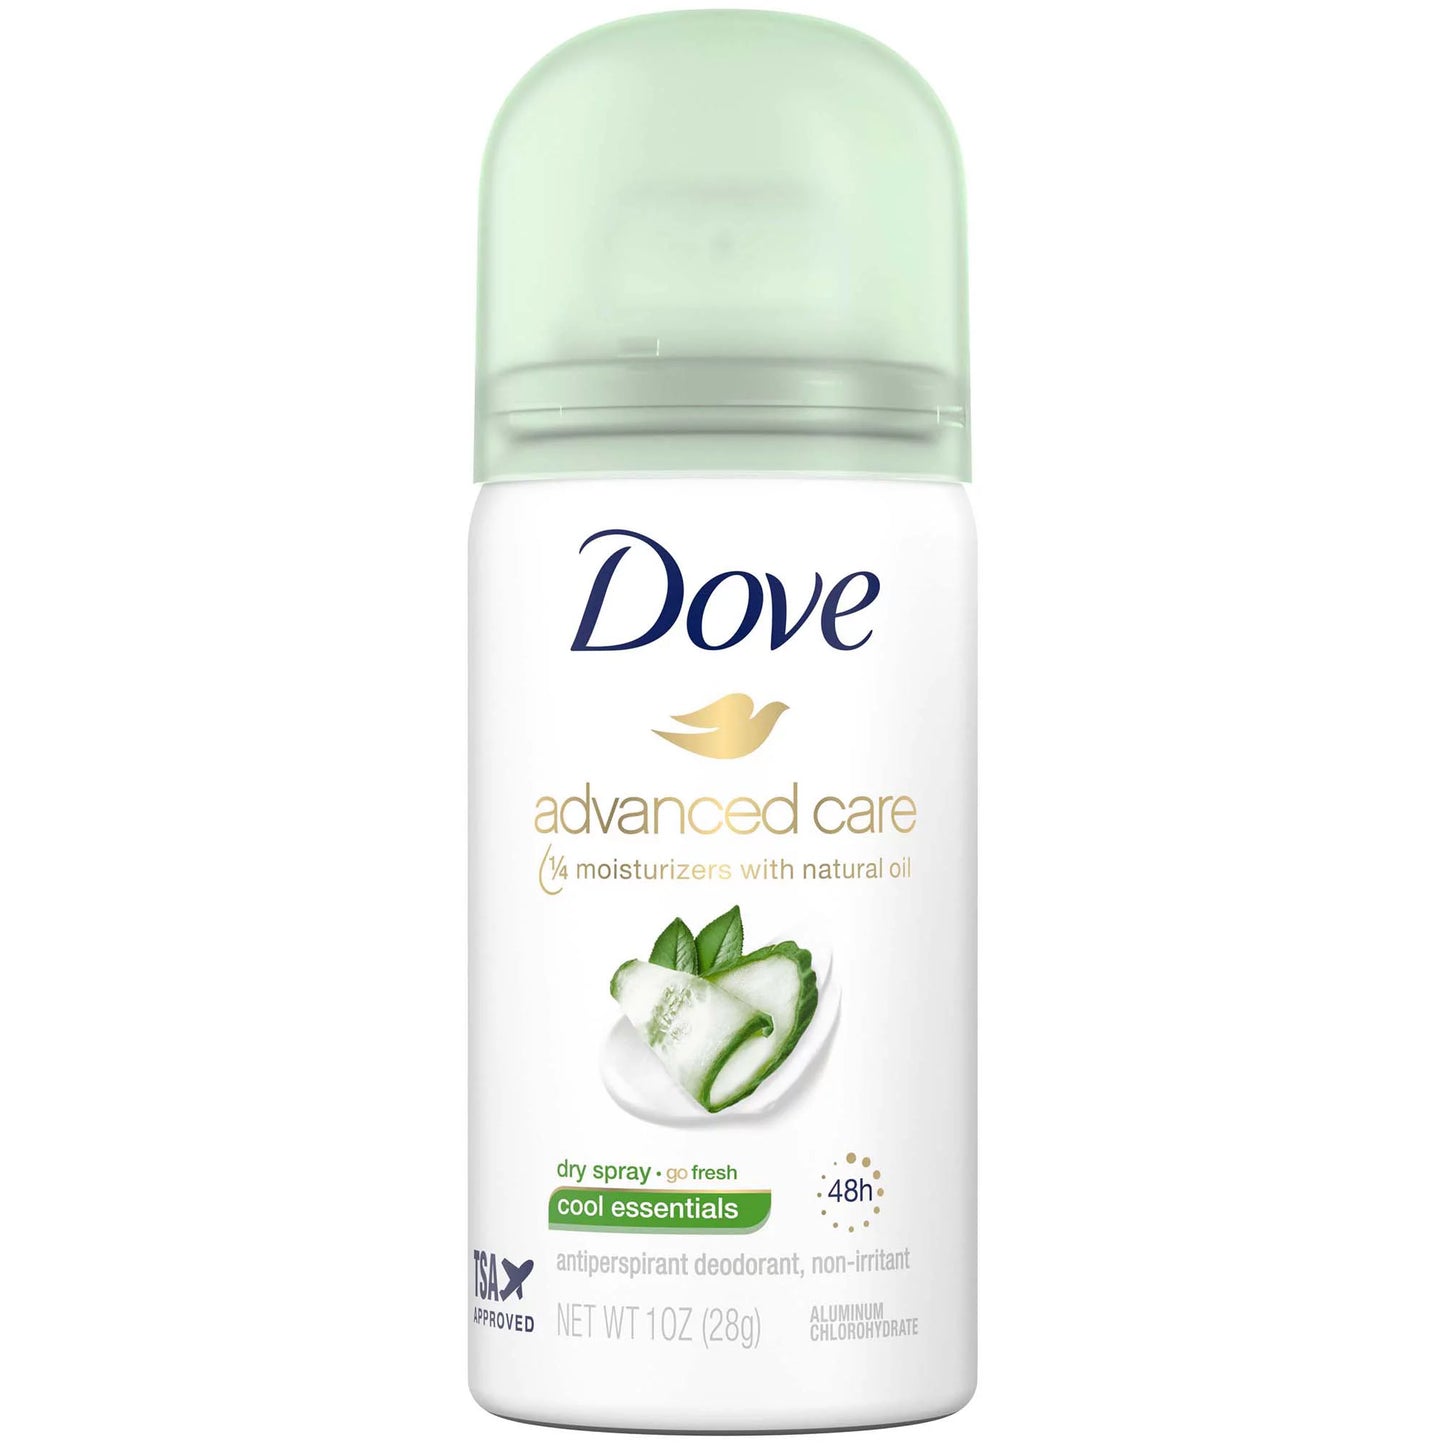 Dove Advanced Care Dry Body Spray